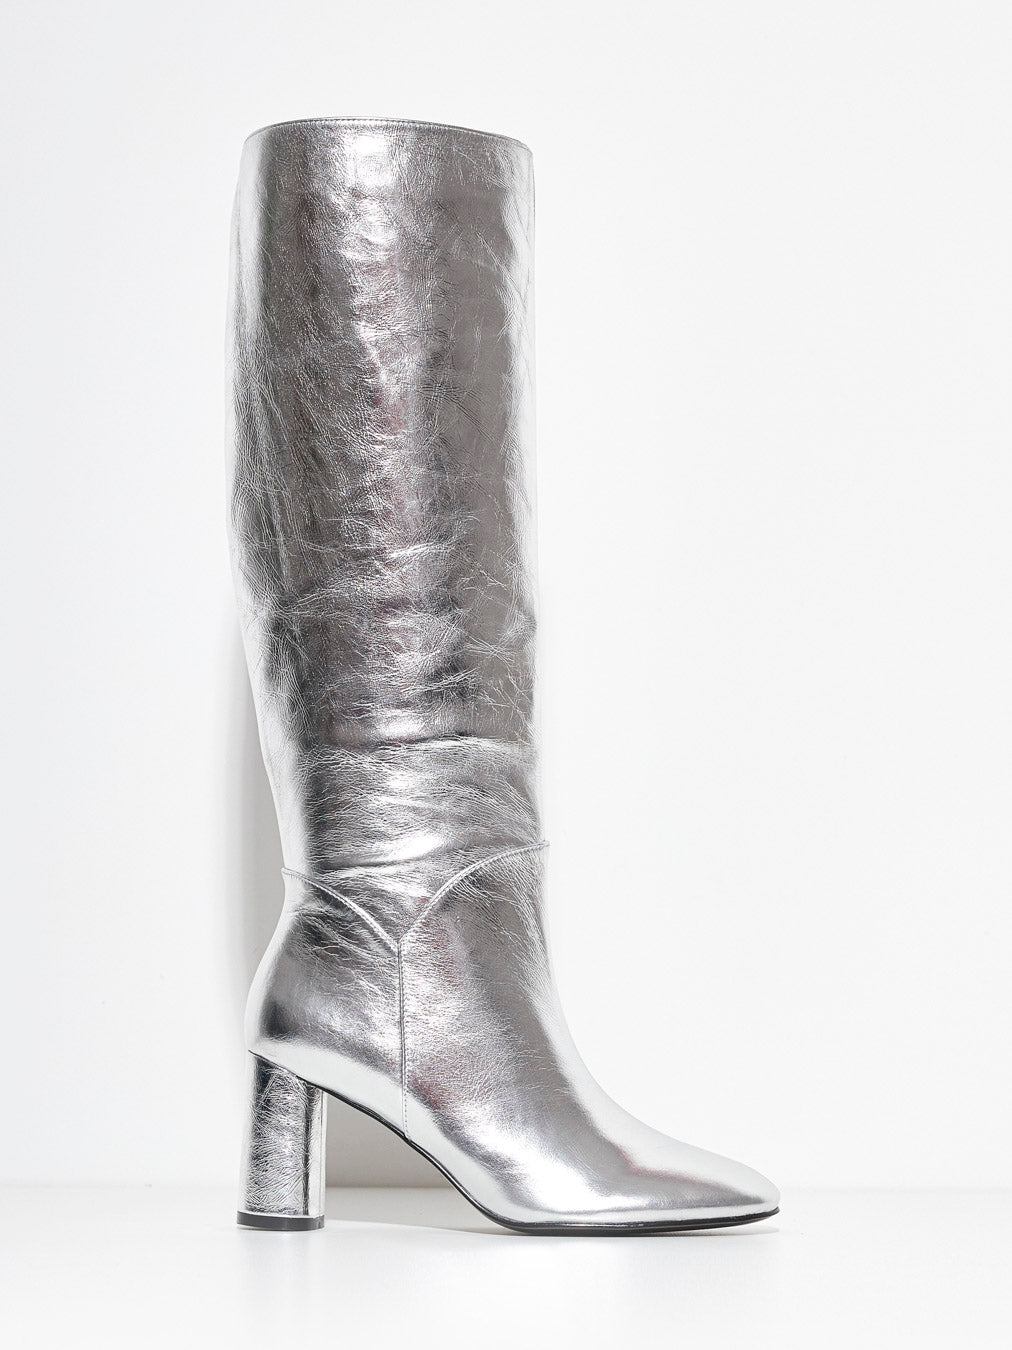 Bibi Lou boot in silver leather